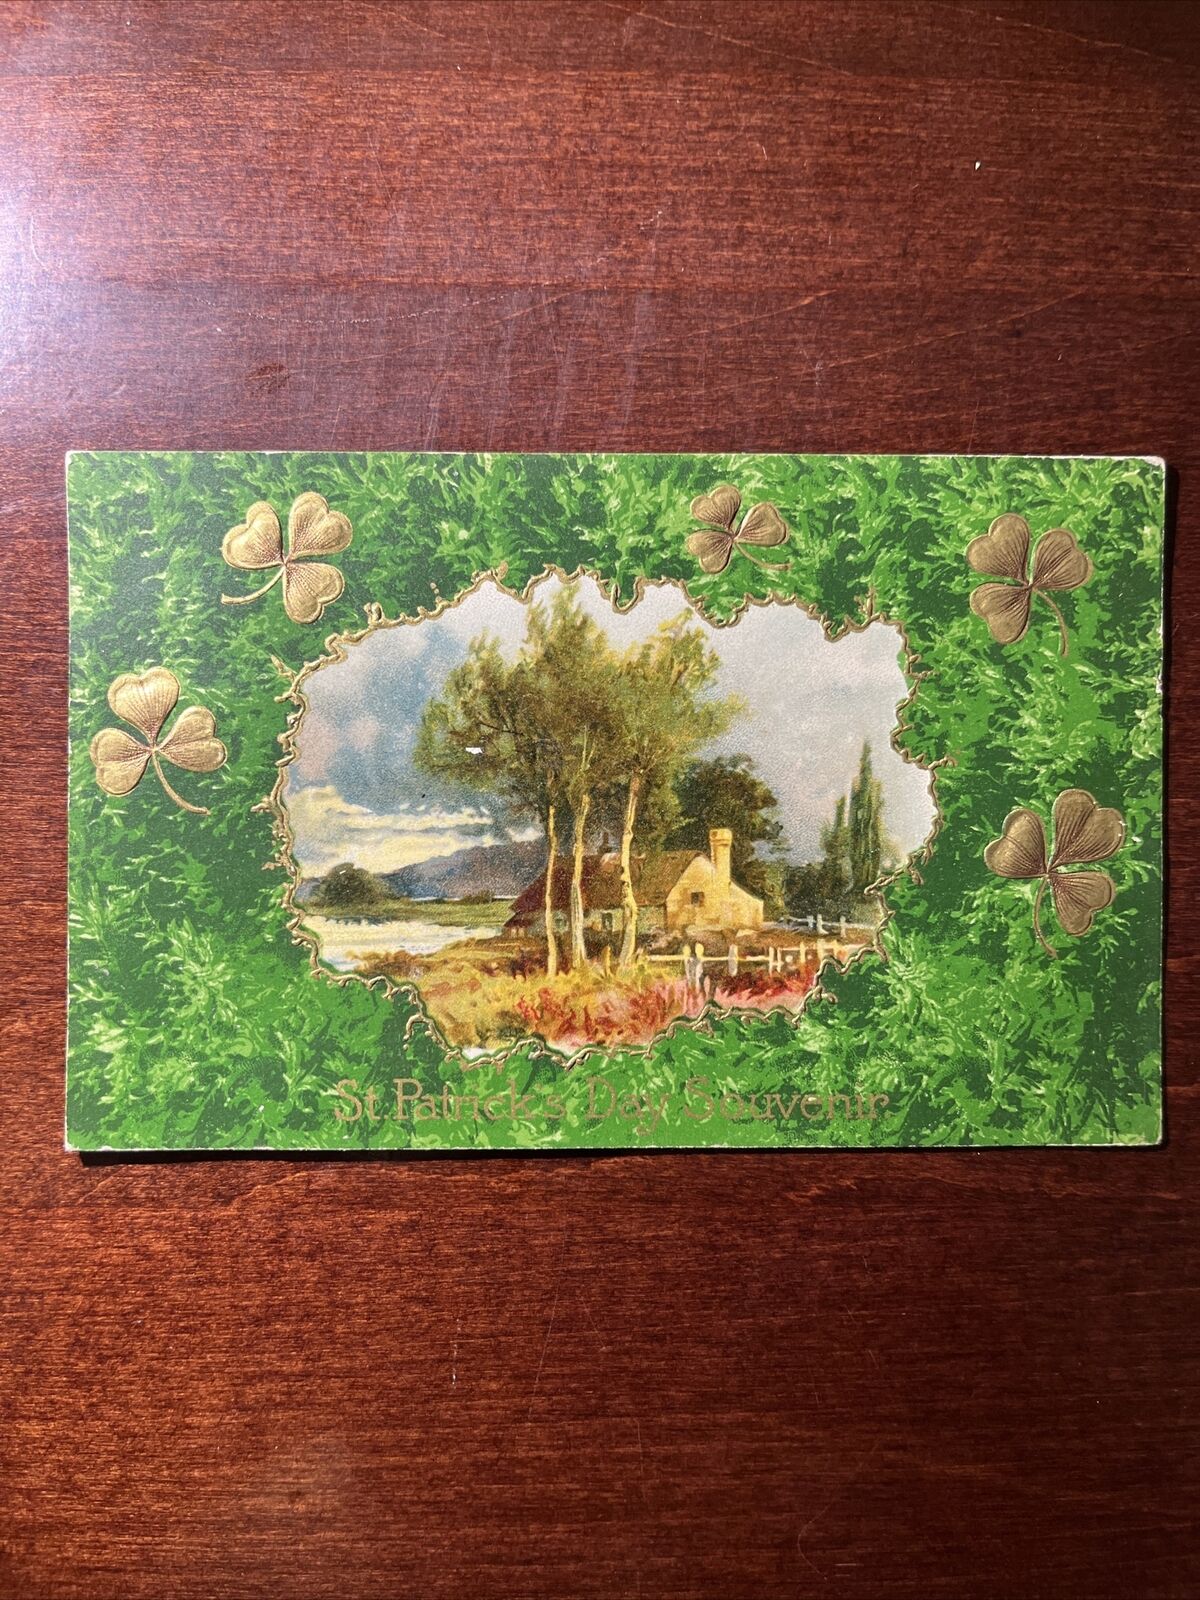 St. Patrick's Day Souvenir Antique Postcard Vintage Post Card 1909